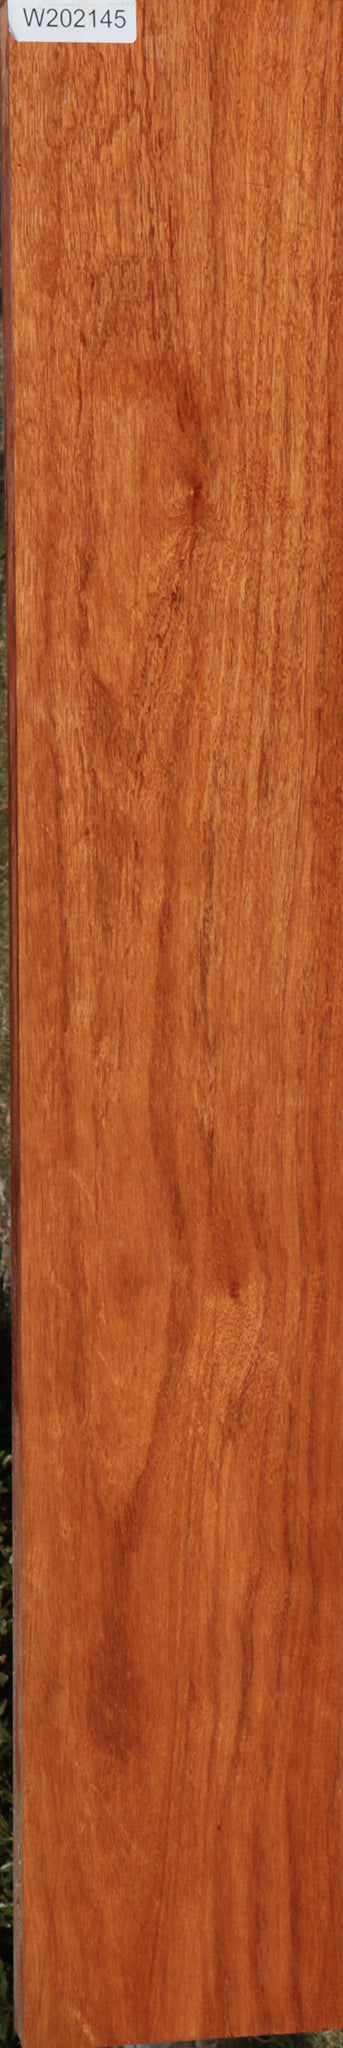 Colorado Manzano Lumber